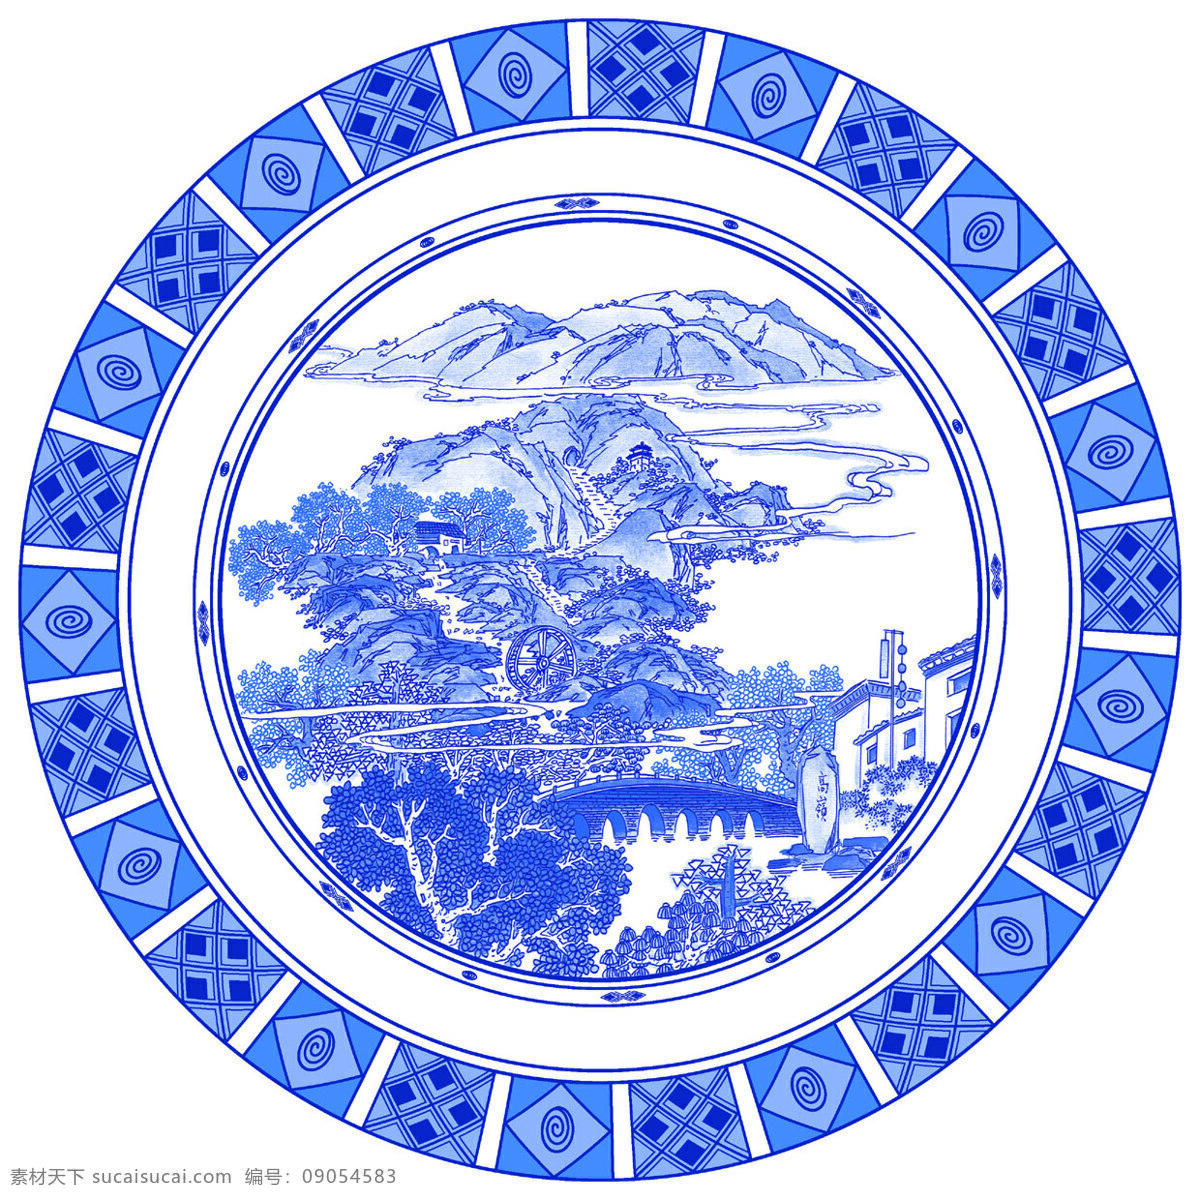 青花圆盘 青花 青花瓷 陶瓷 传统 古典 纹样 中国传统元素 底纹边框 花边花纹